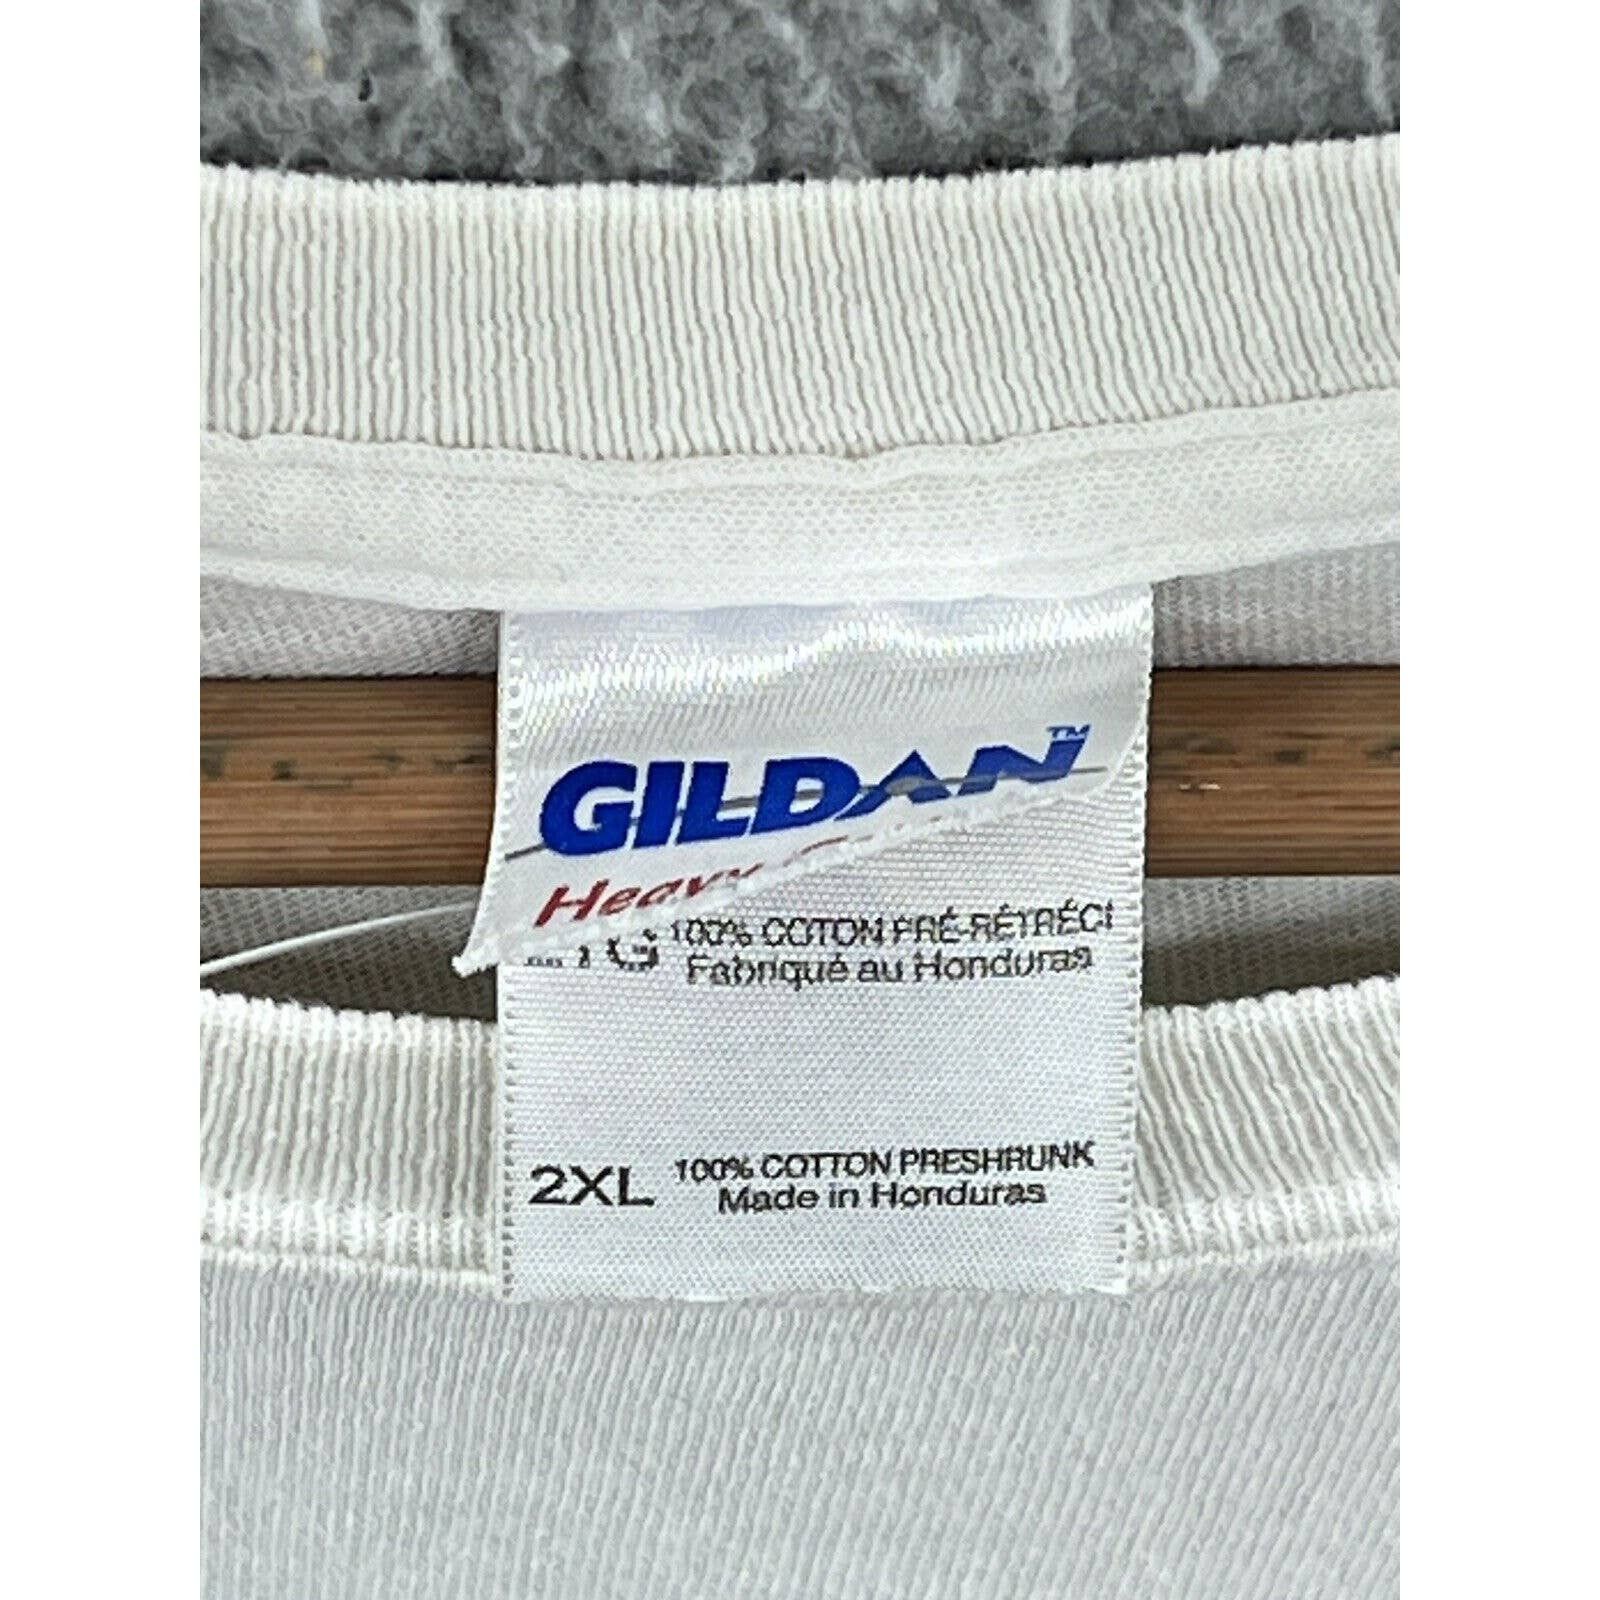 Gildan Gildan Vintage Chunky Movie Horror Corrections T-Shirt XXL Size US XXL / EU 58 / 5 - 3 Thumbnail